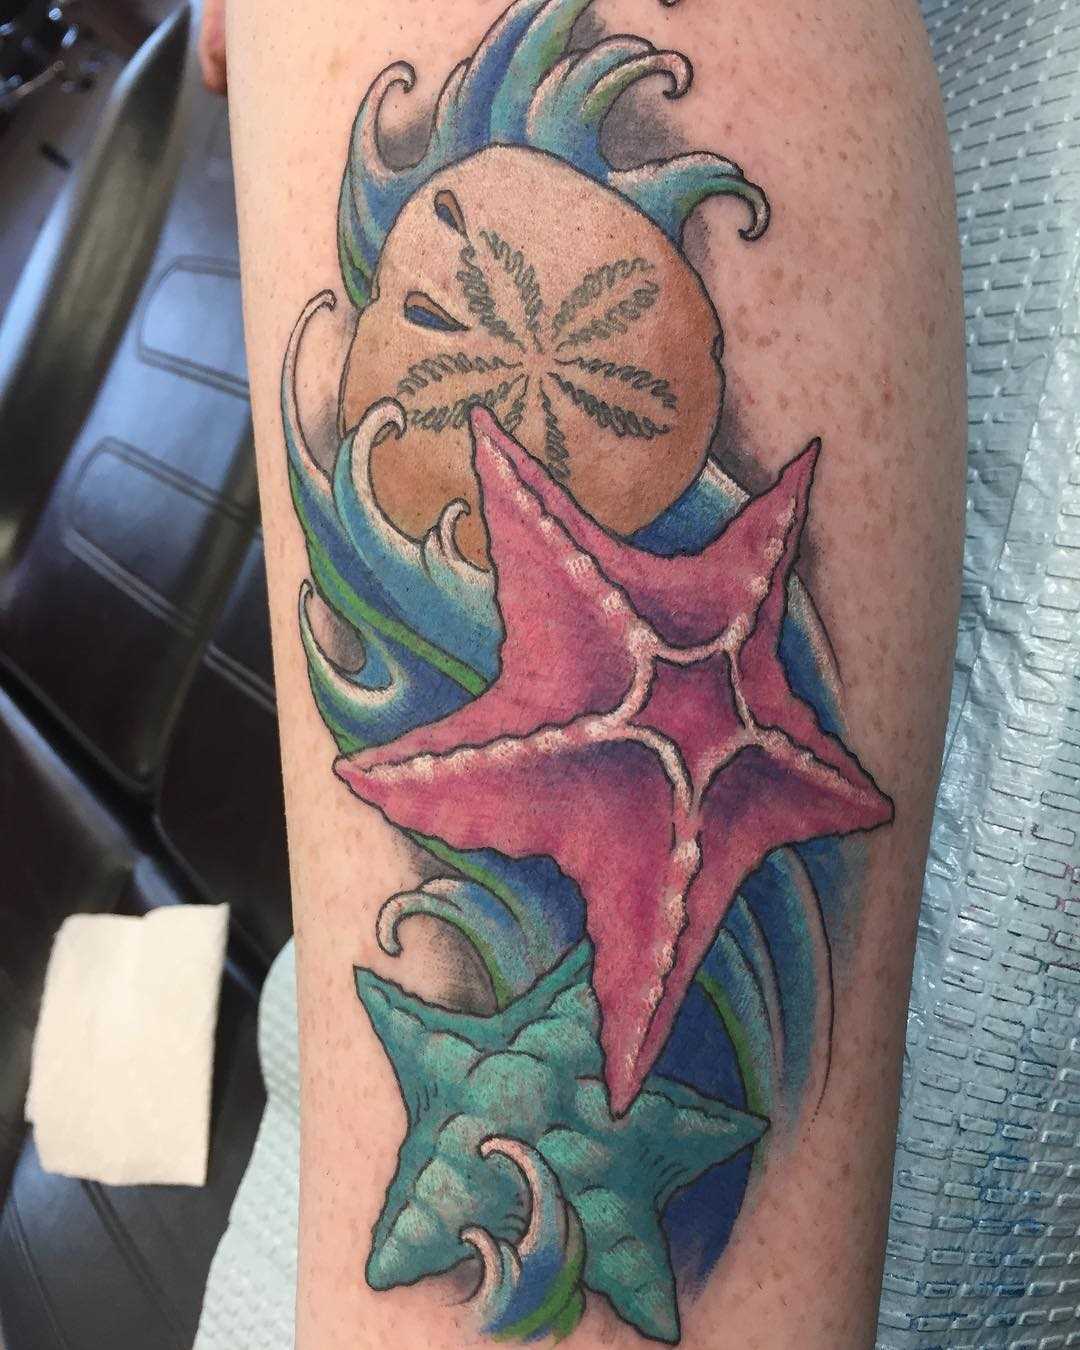 Linda tatuagem de estrelas do mar sobre a perna da menina